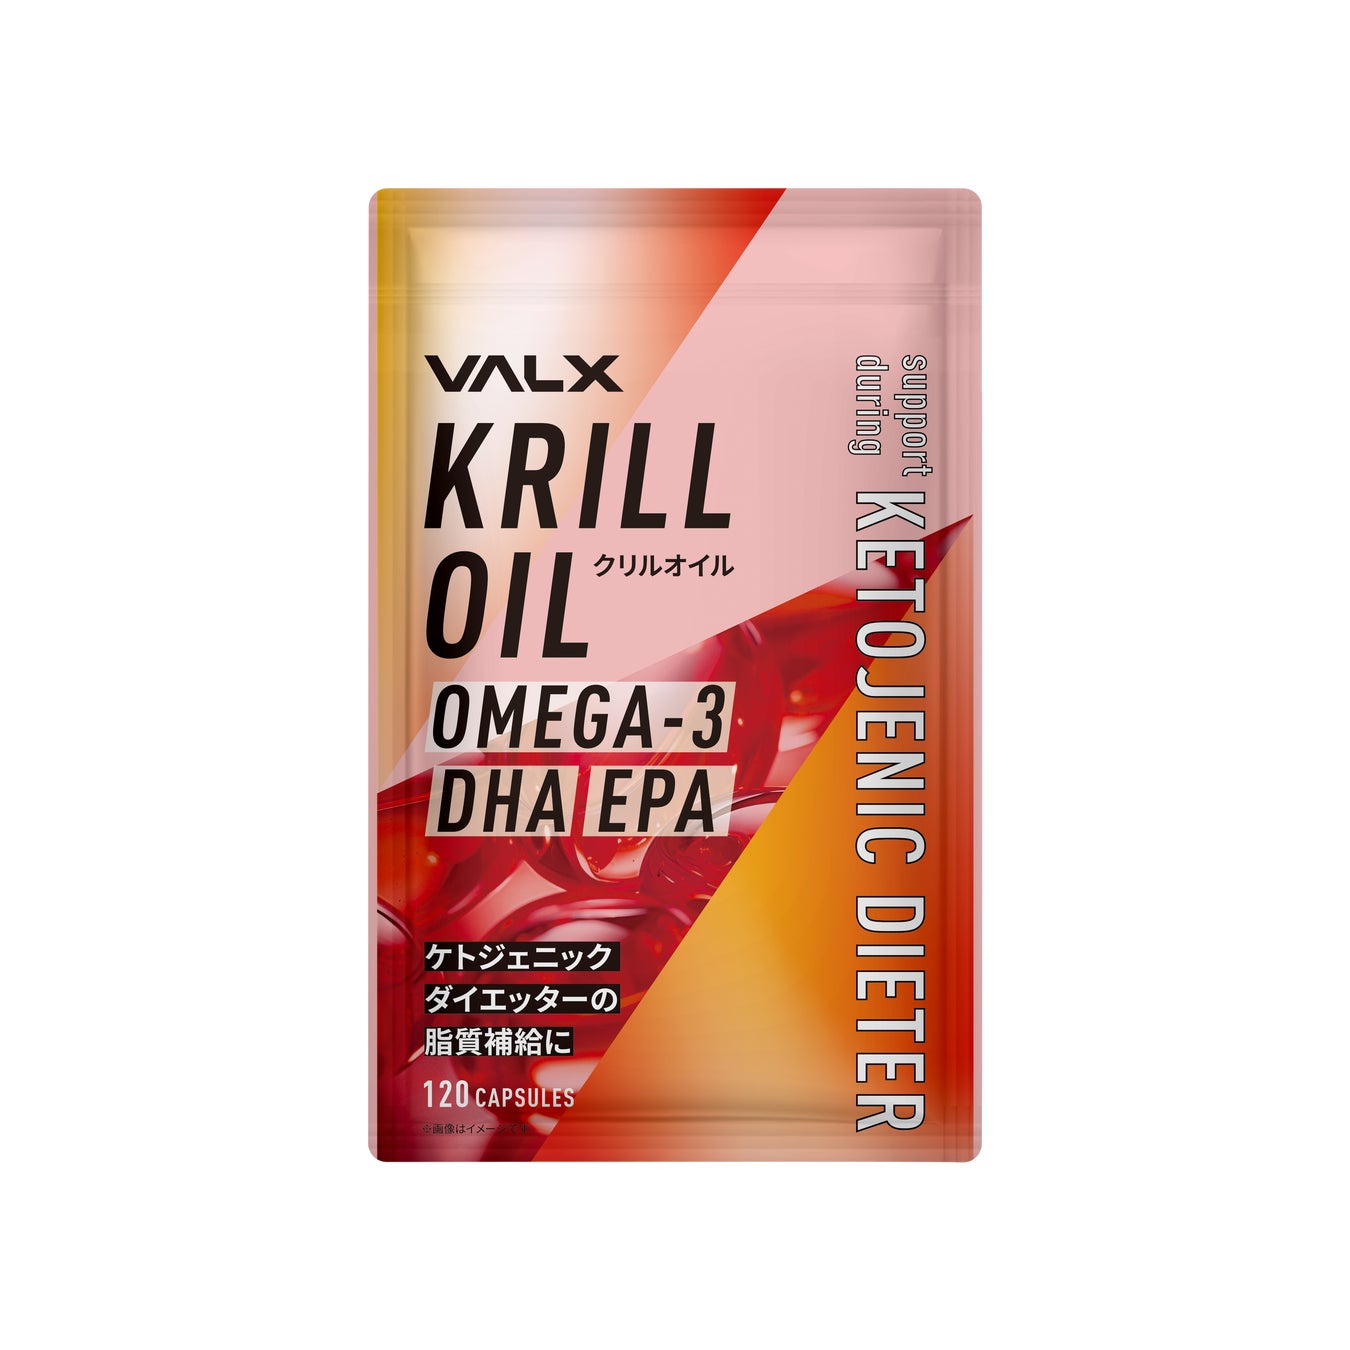 アメリカで今話題の栄養がぎゅっと詰まったサプリメント「VALX クリルオイル」の発売を開始